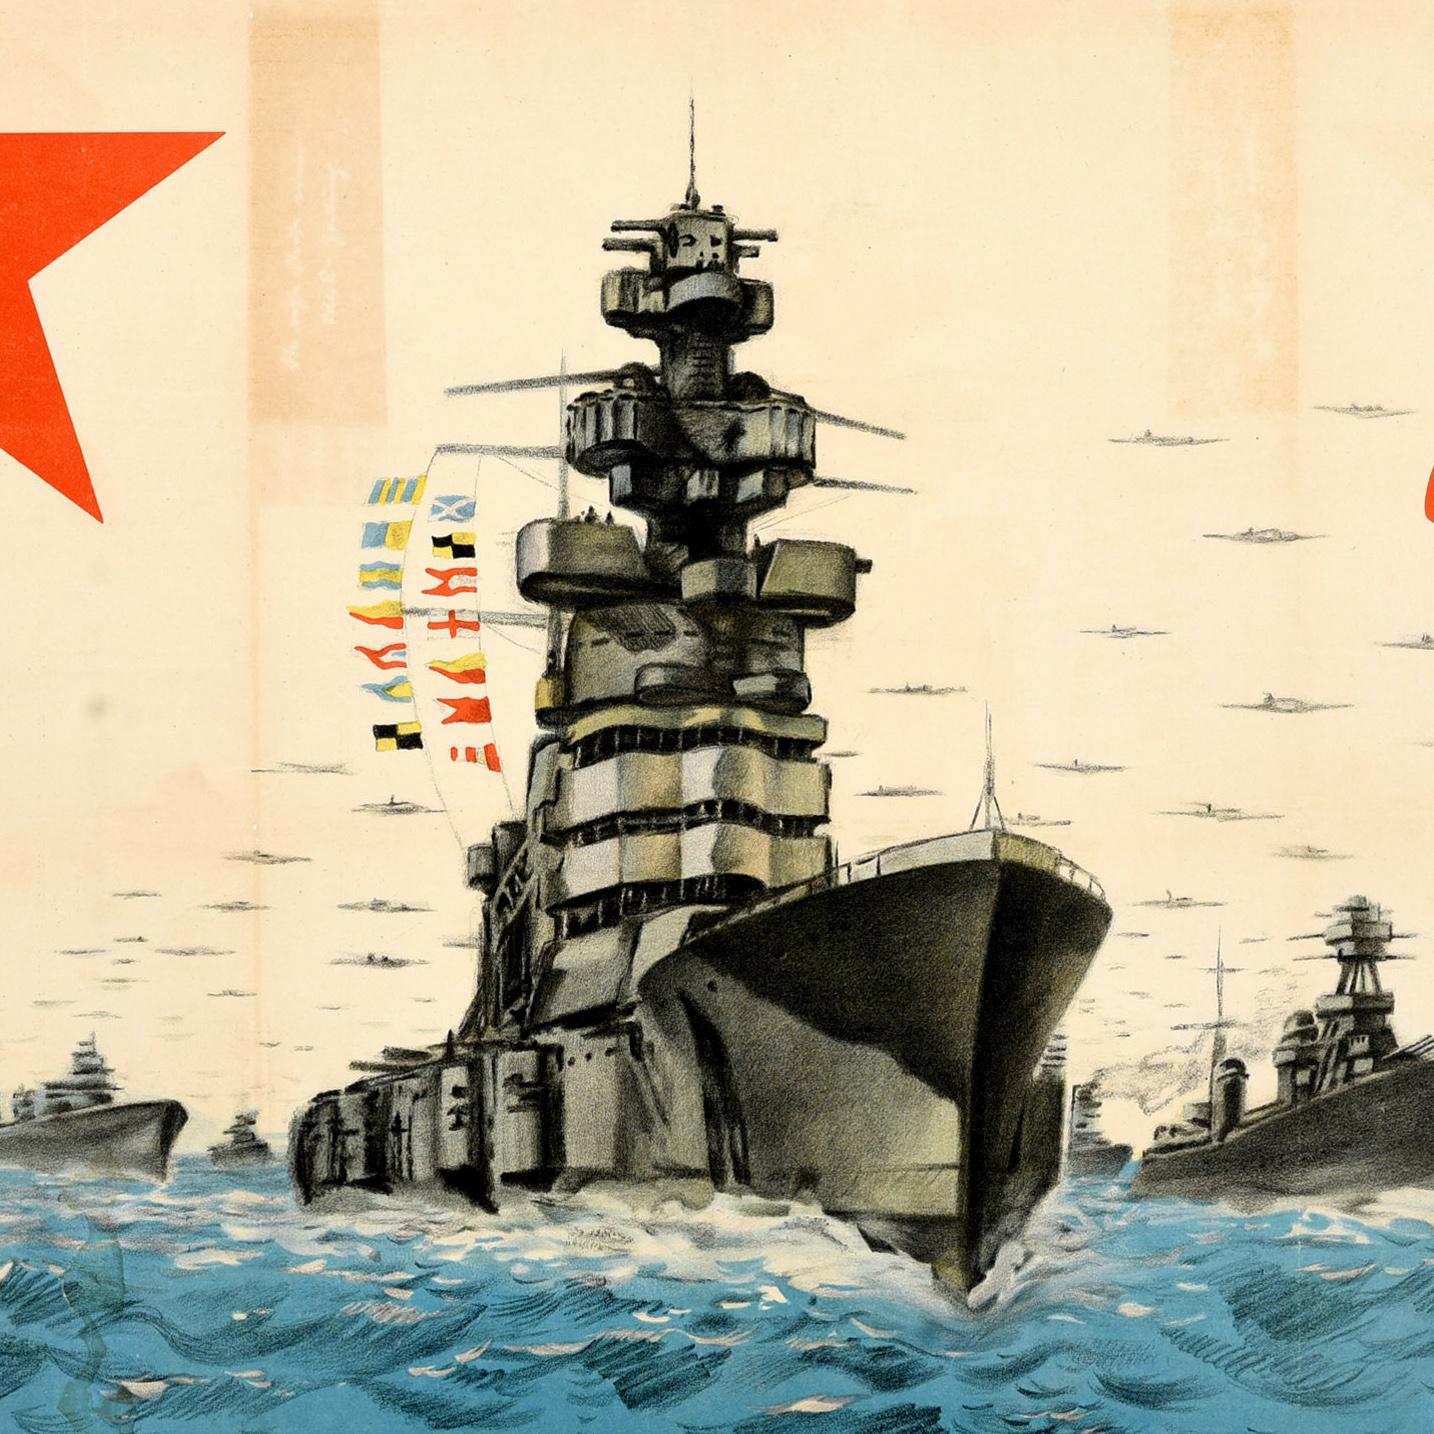 Originales sowjetisches Propagandaplakat aus dem Zweiten Weltkrieg - Es lebe die mächtige Marine der UdSSR / Да Здравствует Мощный Военно-морской Флот Ссср! - mit dem Bild einer Flotte von Kriegsschiffen auf See, über der Militärflugzeuge fliegen,